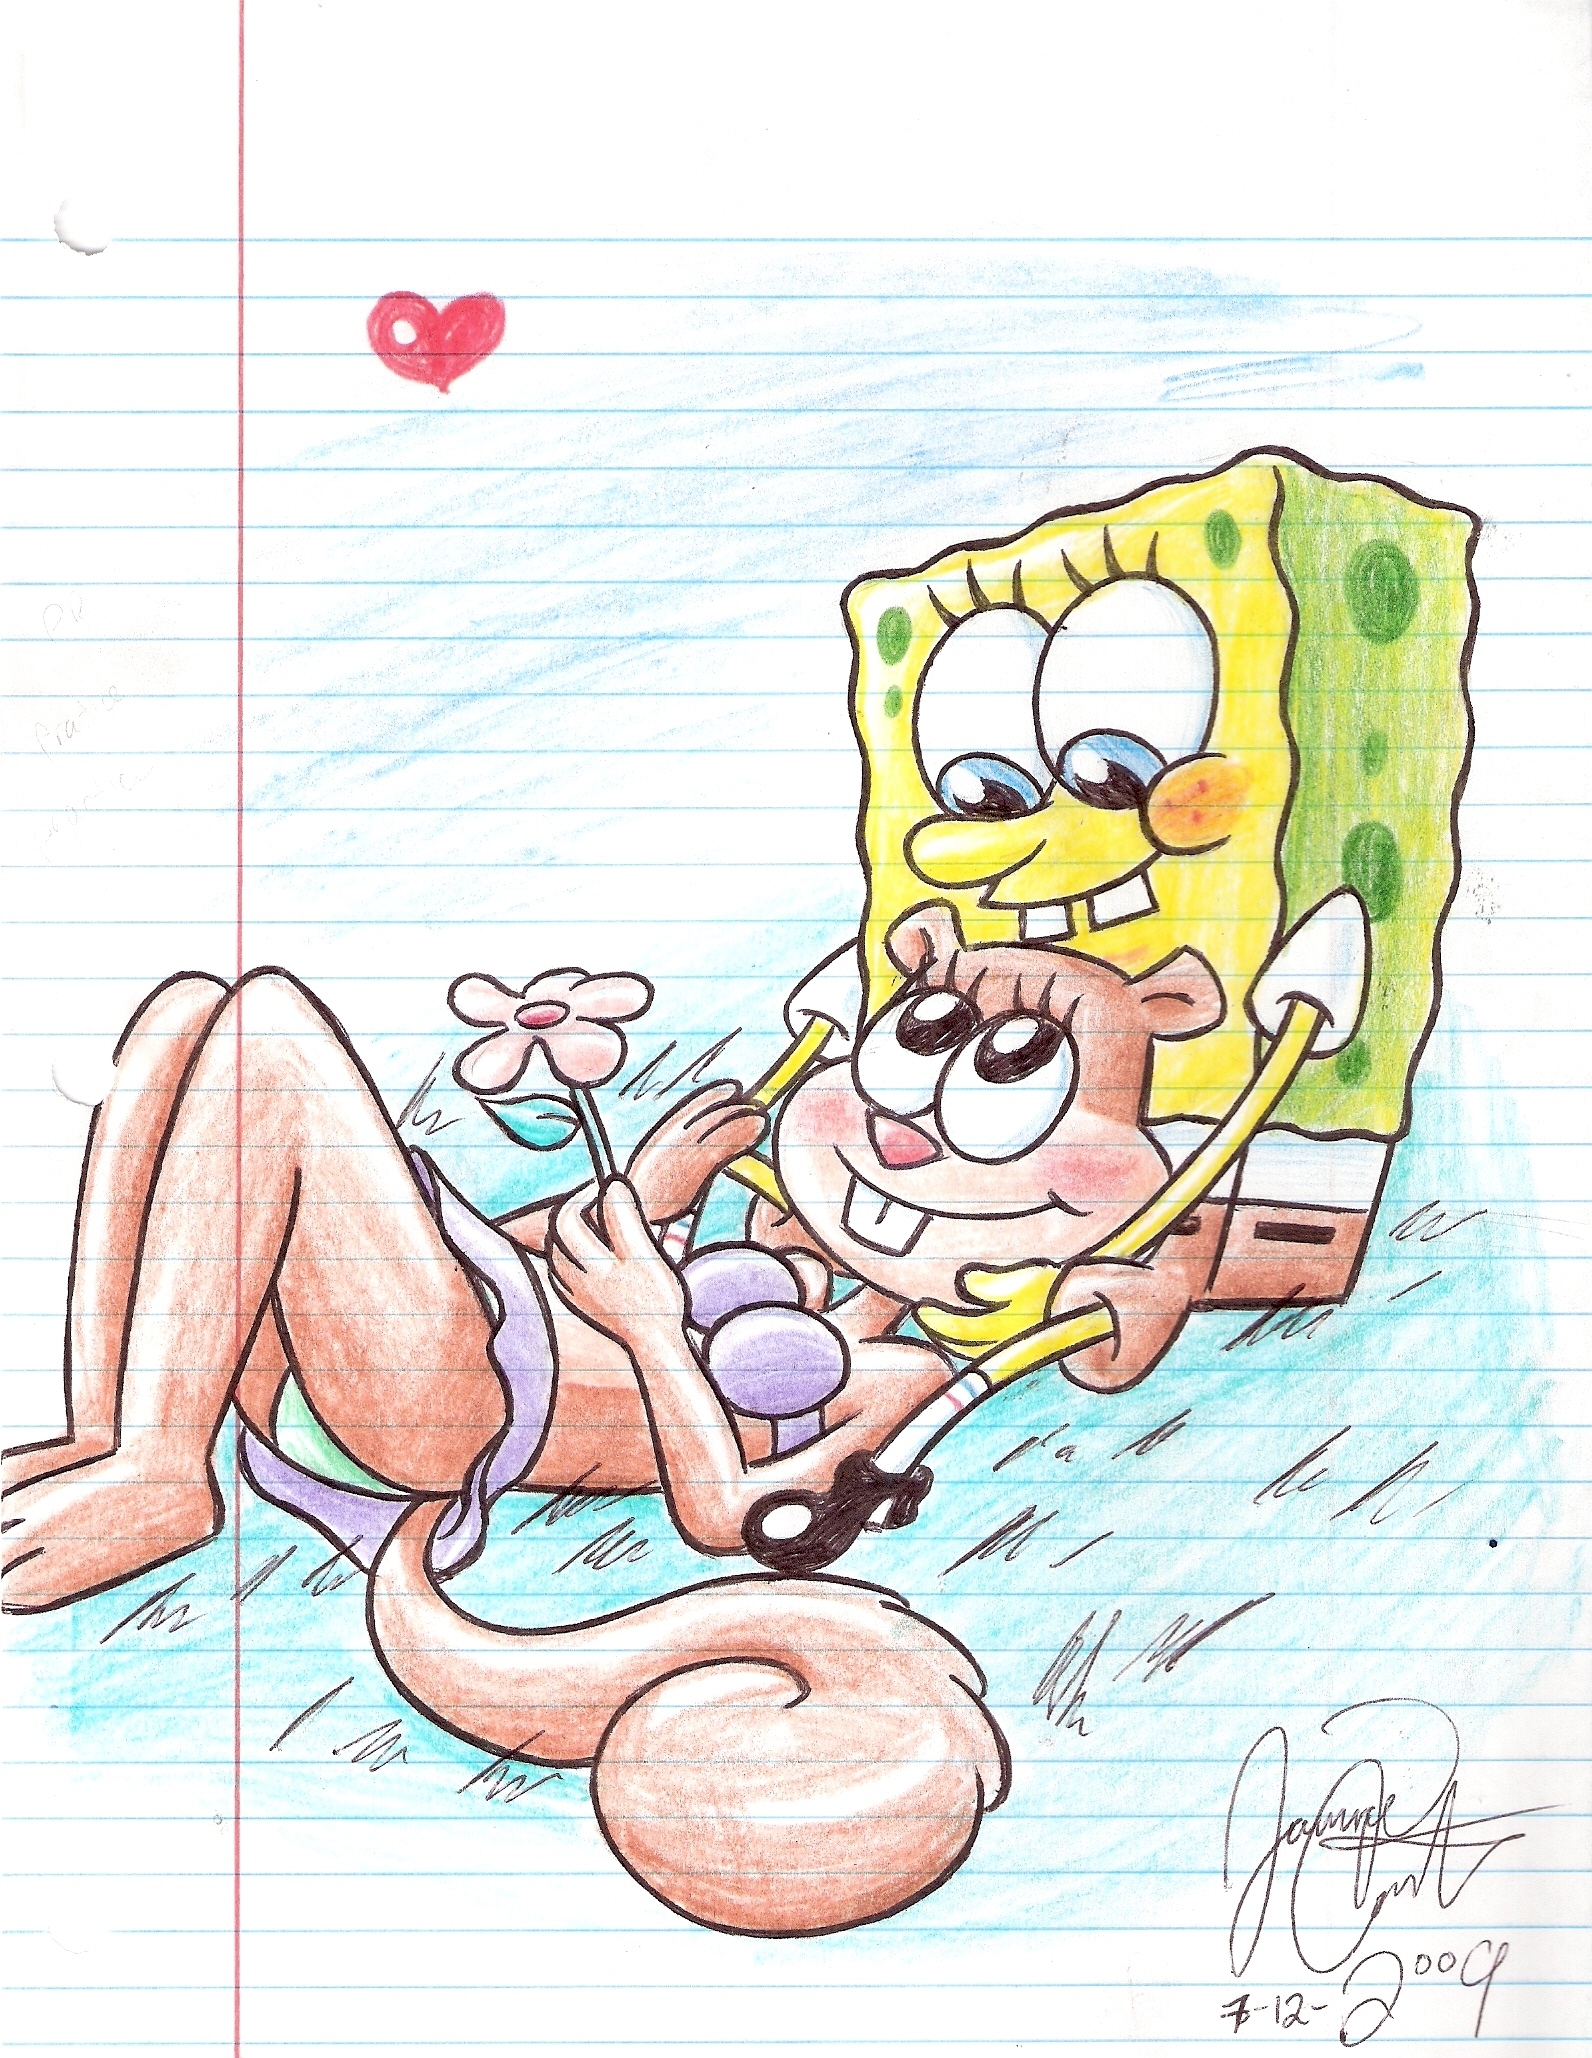 لمحبيييييييين سبونج بوب  SpongeBob-and-Sandy-spongebob-squarepants-11588245-1592-2058